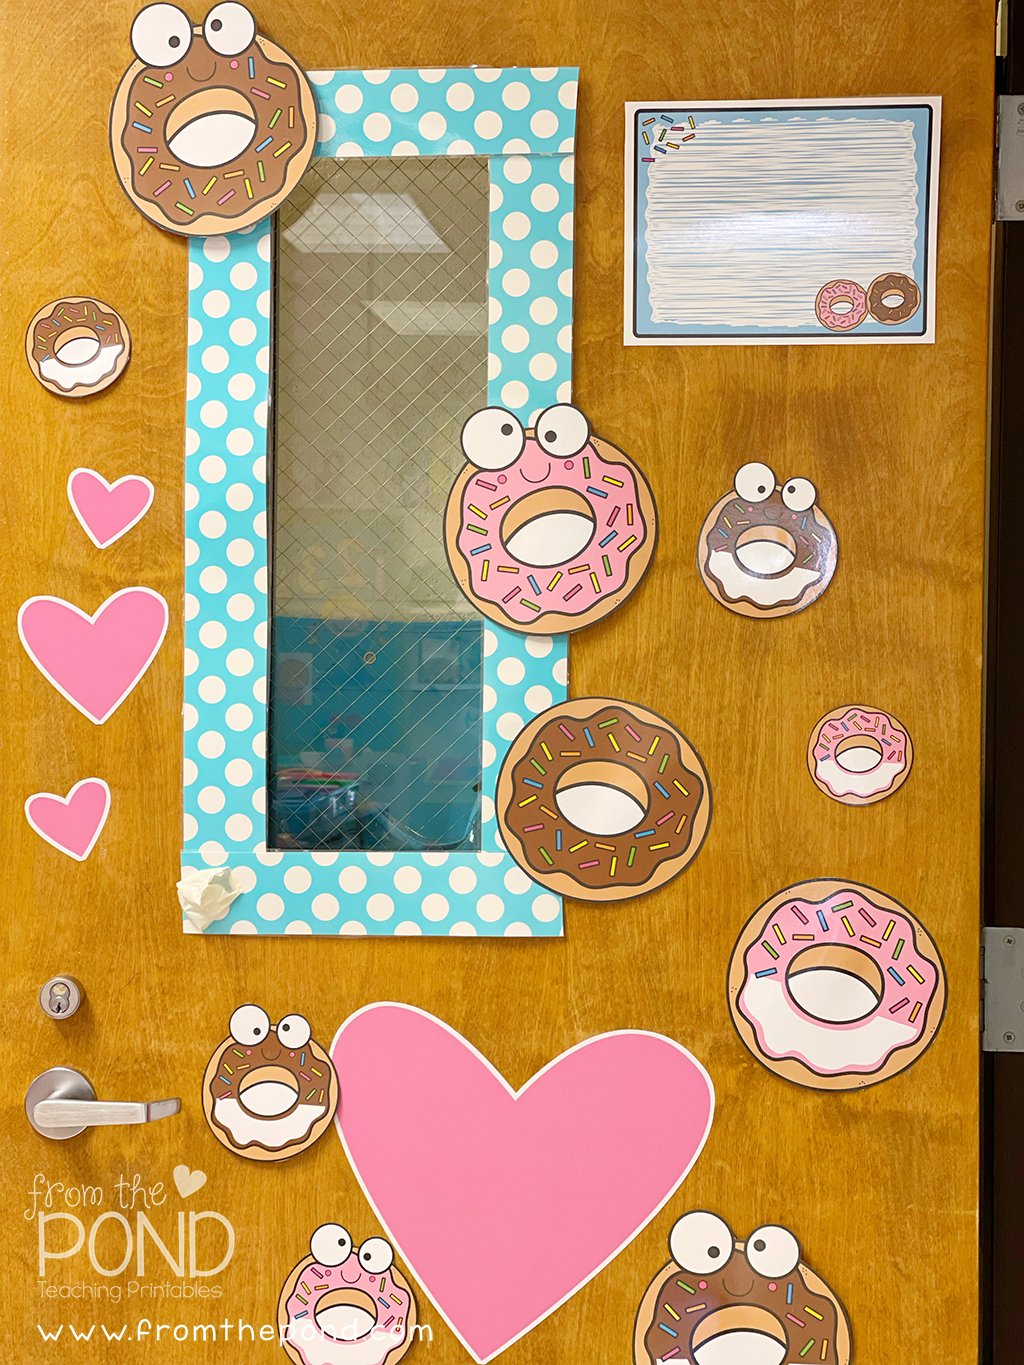 Donut Door Display